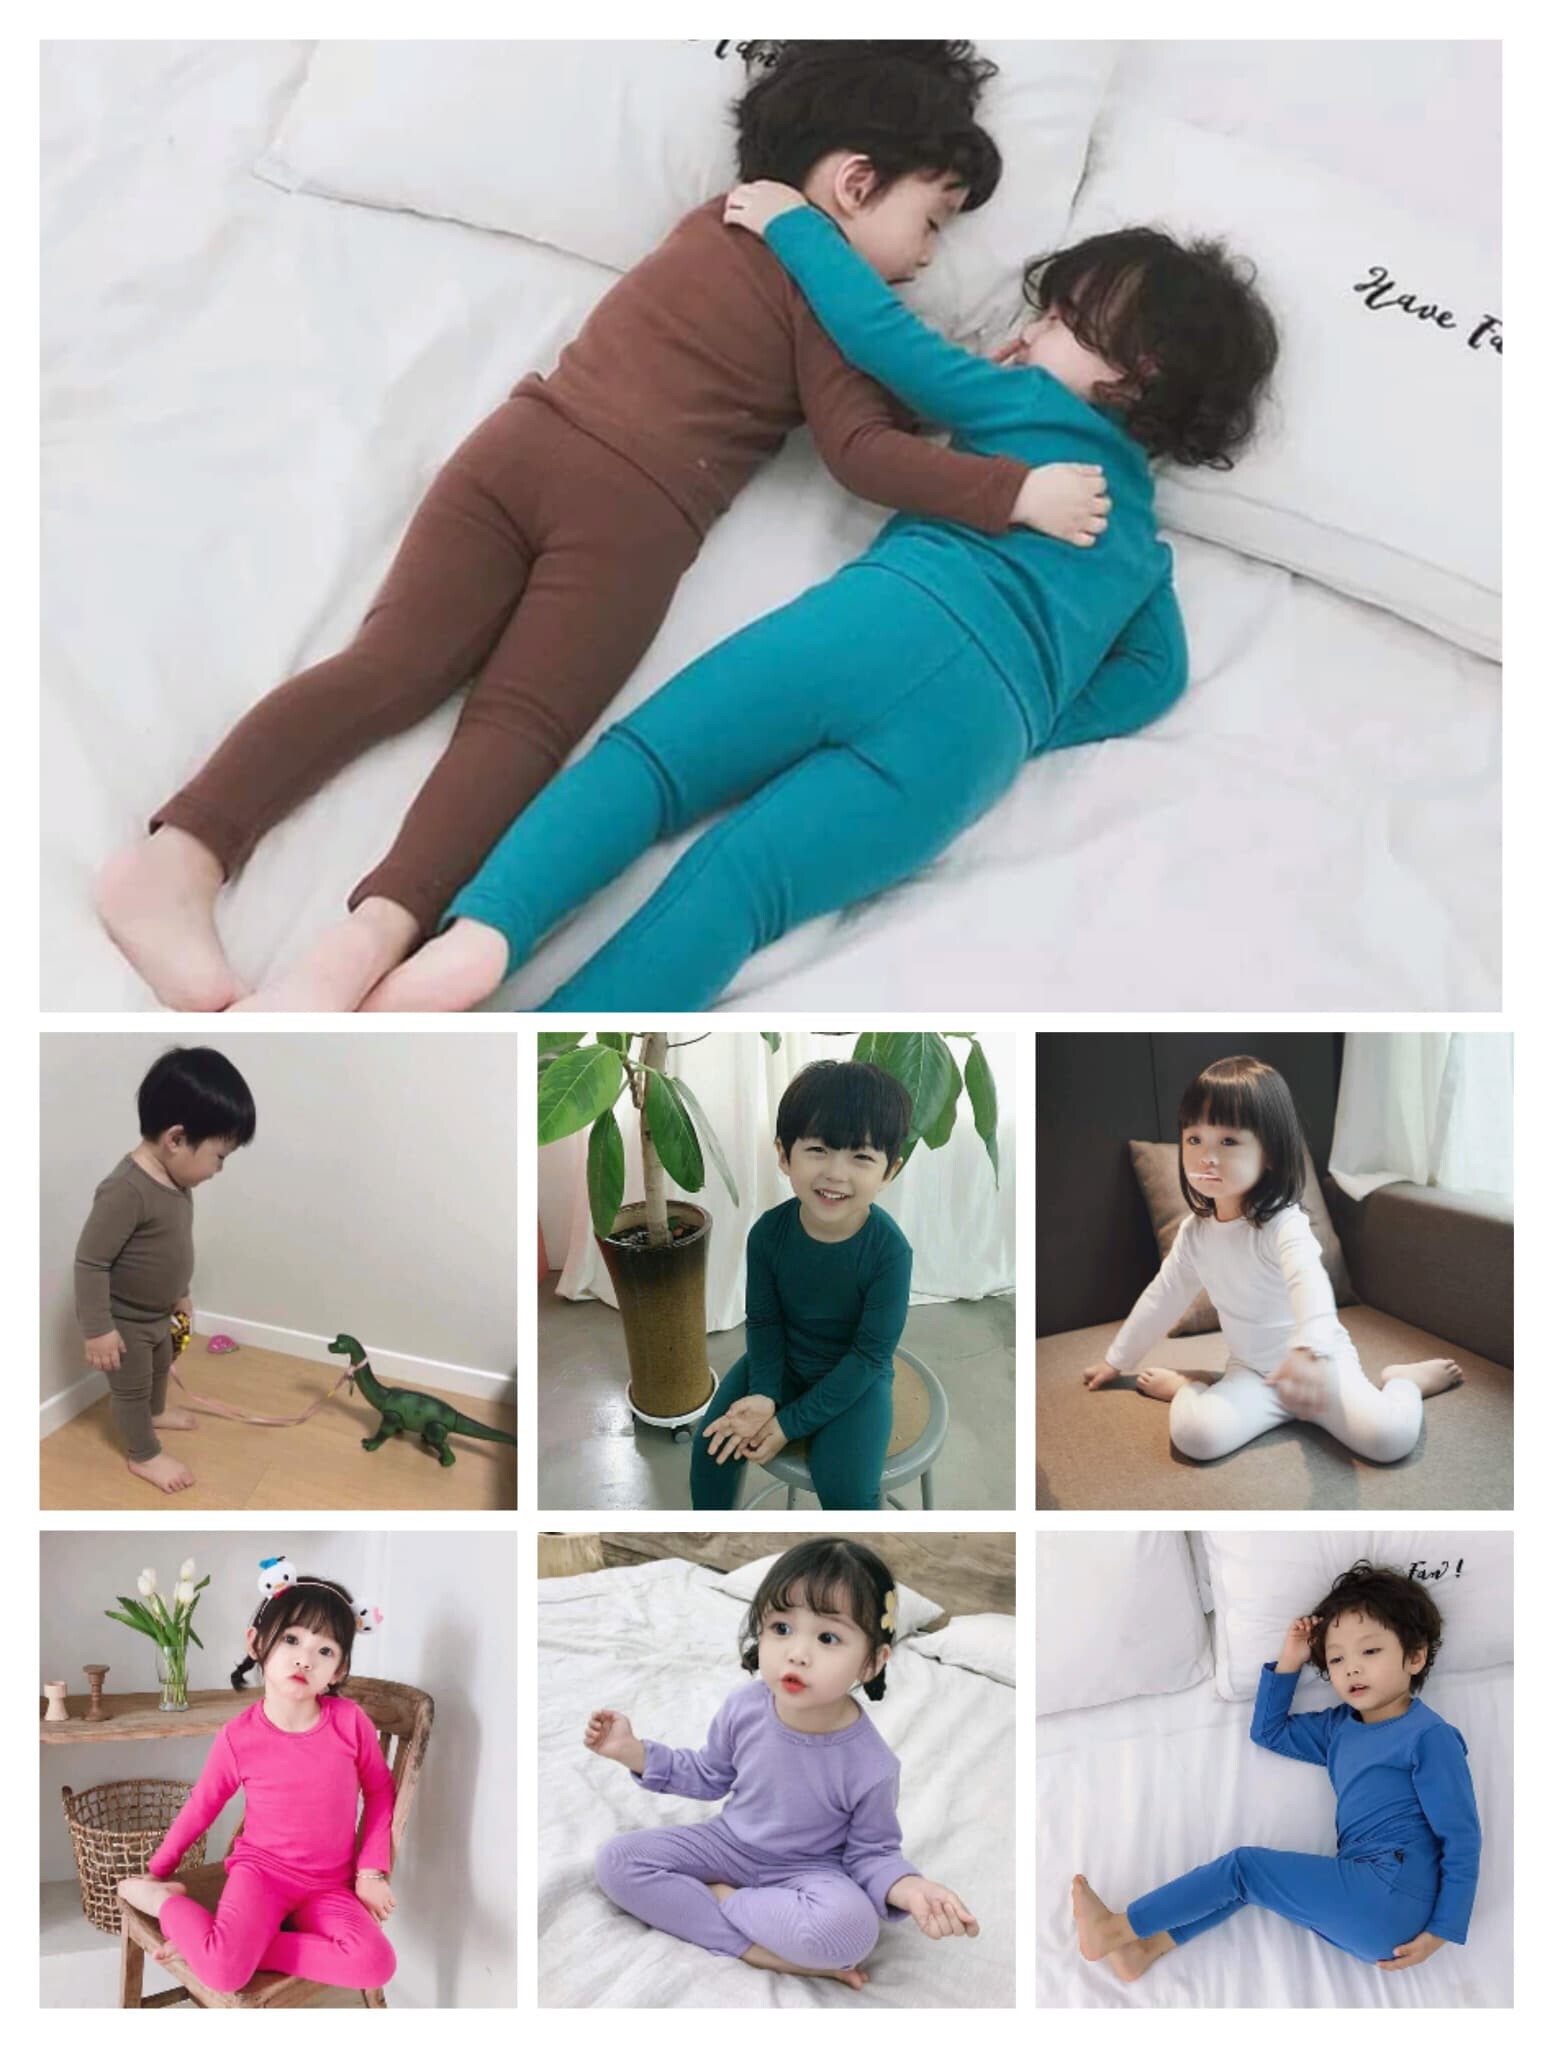 ชุดนอนเด็กพุงป่อง ชุดนอนสีพื้น 30 สี ผ้าคอตตอนนิ่มใส่สบาย กันยุง กันหนาว นอนห้องแอร์ ชุดนอนรัดรูป ชุดนอนสลิมฟิต ชุดนอนเด็กเกาหลี